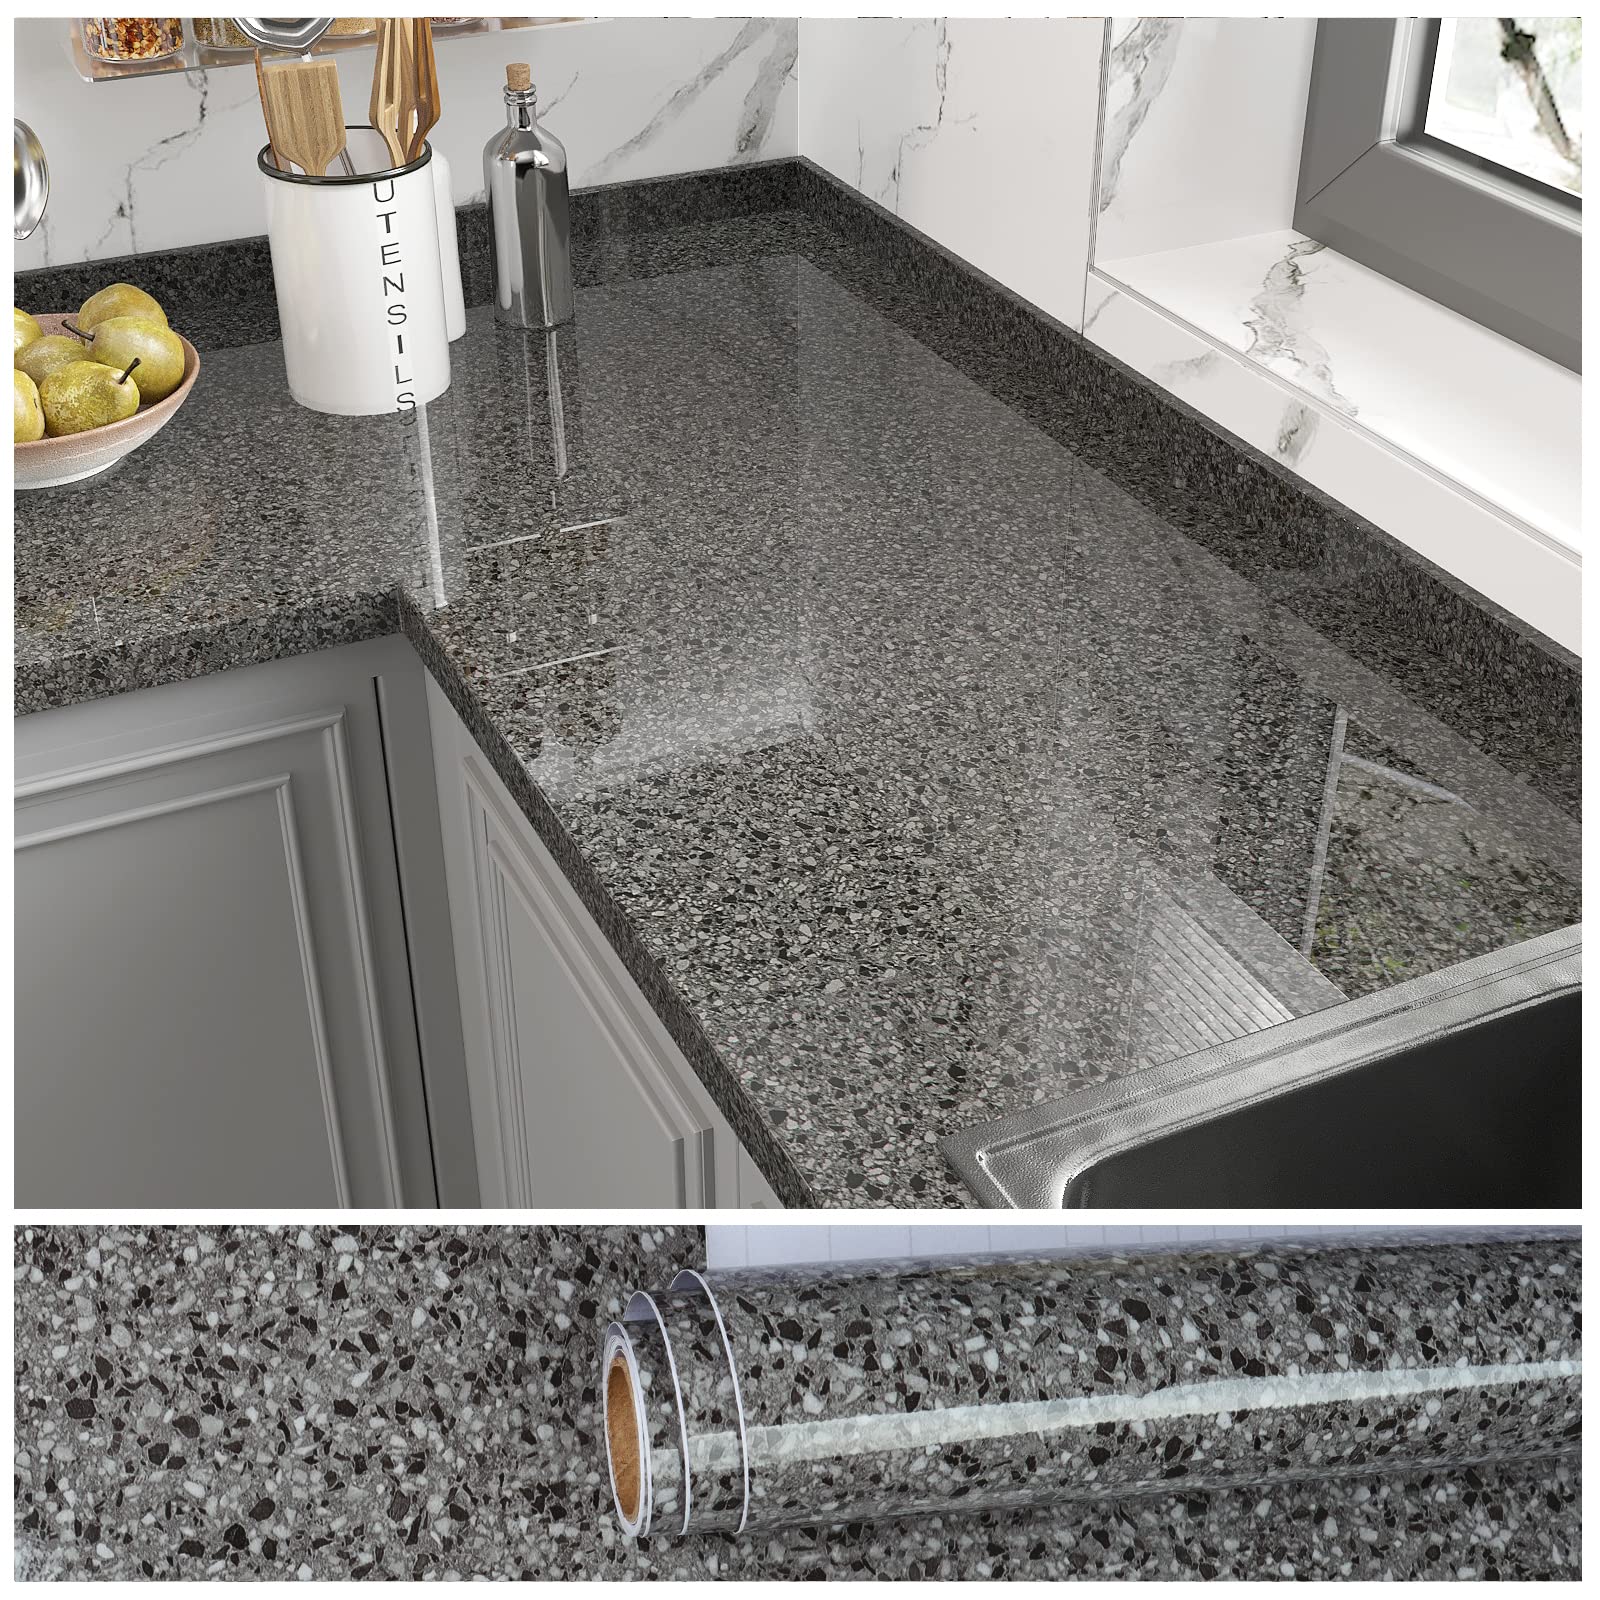 VEELIKE 15.7x 118 Granite Contact Paper for Countertops Waterproof